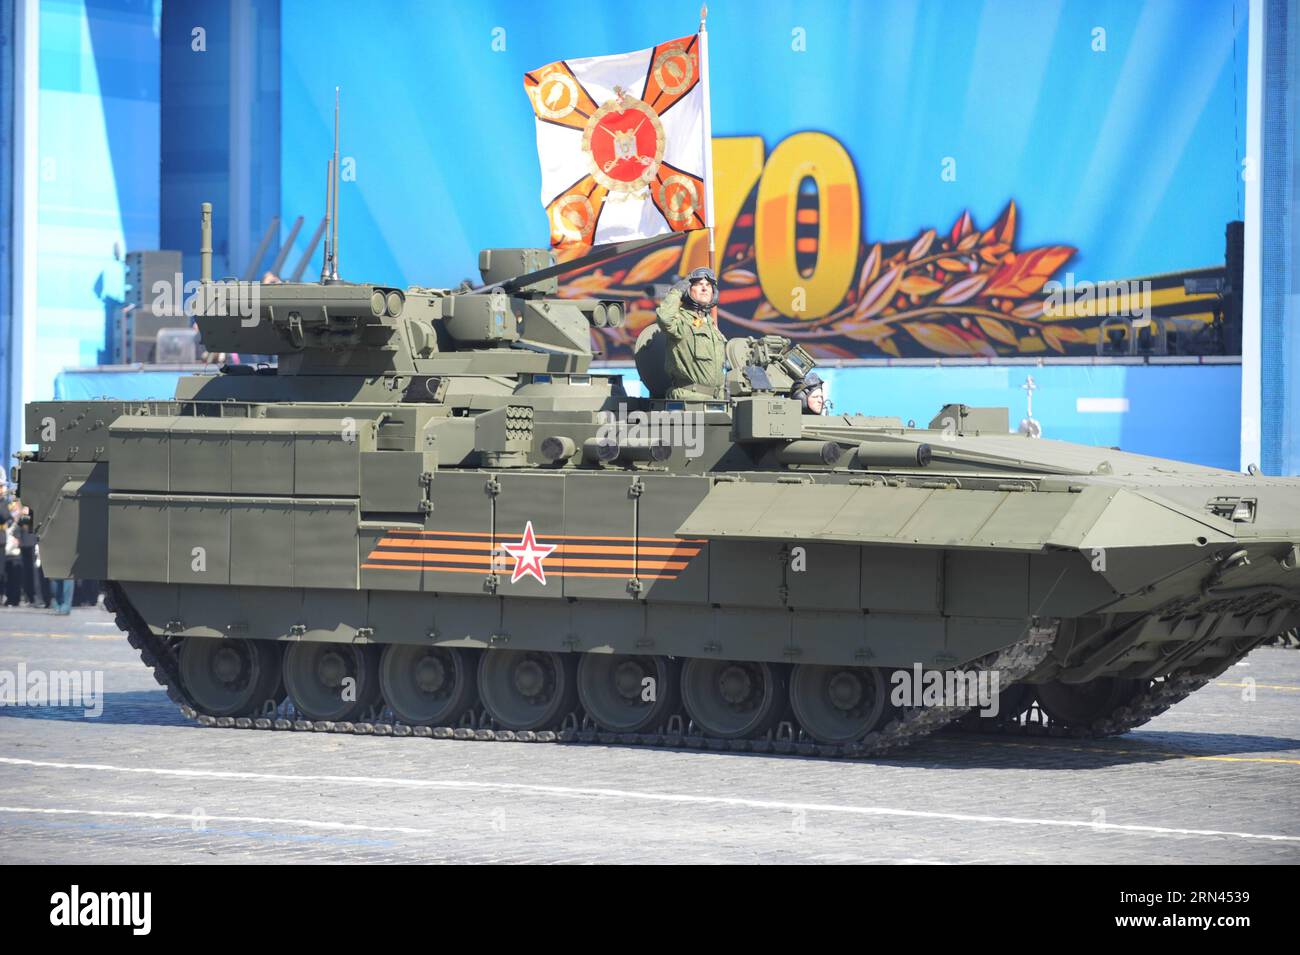 (150507) -- MOSKAU, Mai. 7, 2015 – Ein schweres Infanteriefahrzeug wird am 7. Mai 2015 auf dem Roten Platz in Moskau während der letzten Probe für die Militärparade am Siegtag gesehen. Russland feiert den 70. Jahrestag des Sieges von 1945 über Nazi-Deutschland am 9. Mai. RUSSLAND-MOSKAU-WWII JAHRESPARADE-PROBE DaixTianfang PUBLICATIONxNOTxINxCHN Moskau 7. Mai 2015 ein schweres Infanteriefahrzeug IST Seen auf dem Moskauer Roten Platz AM 7. Mai 2015 während der abschließenden Probe für den Siegtag der Militärparade feiert Russland den 70. JAHRESTAG des Sieges 1945 über Nazi Deutschland O Stockfoto